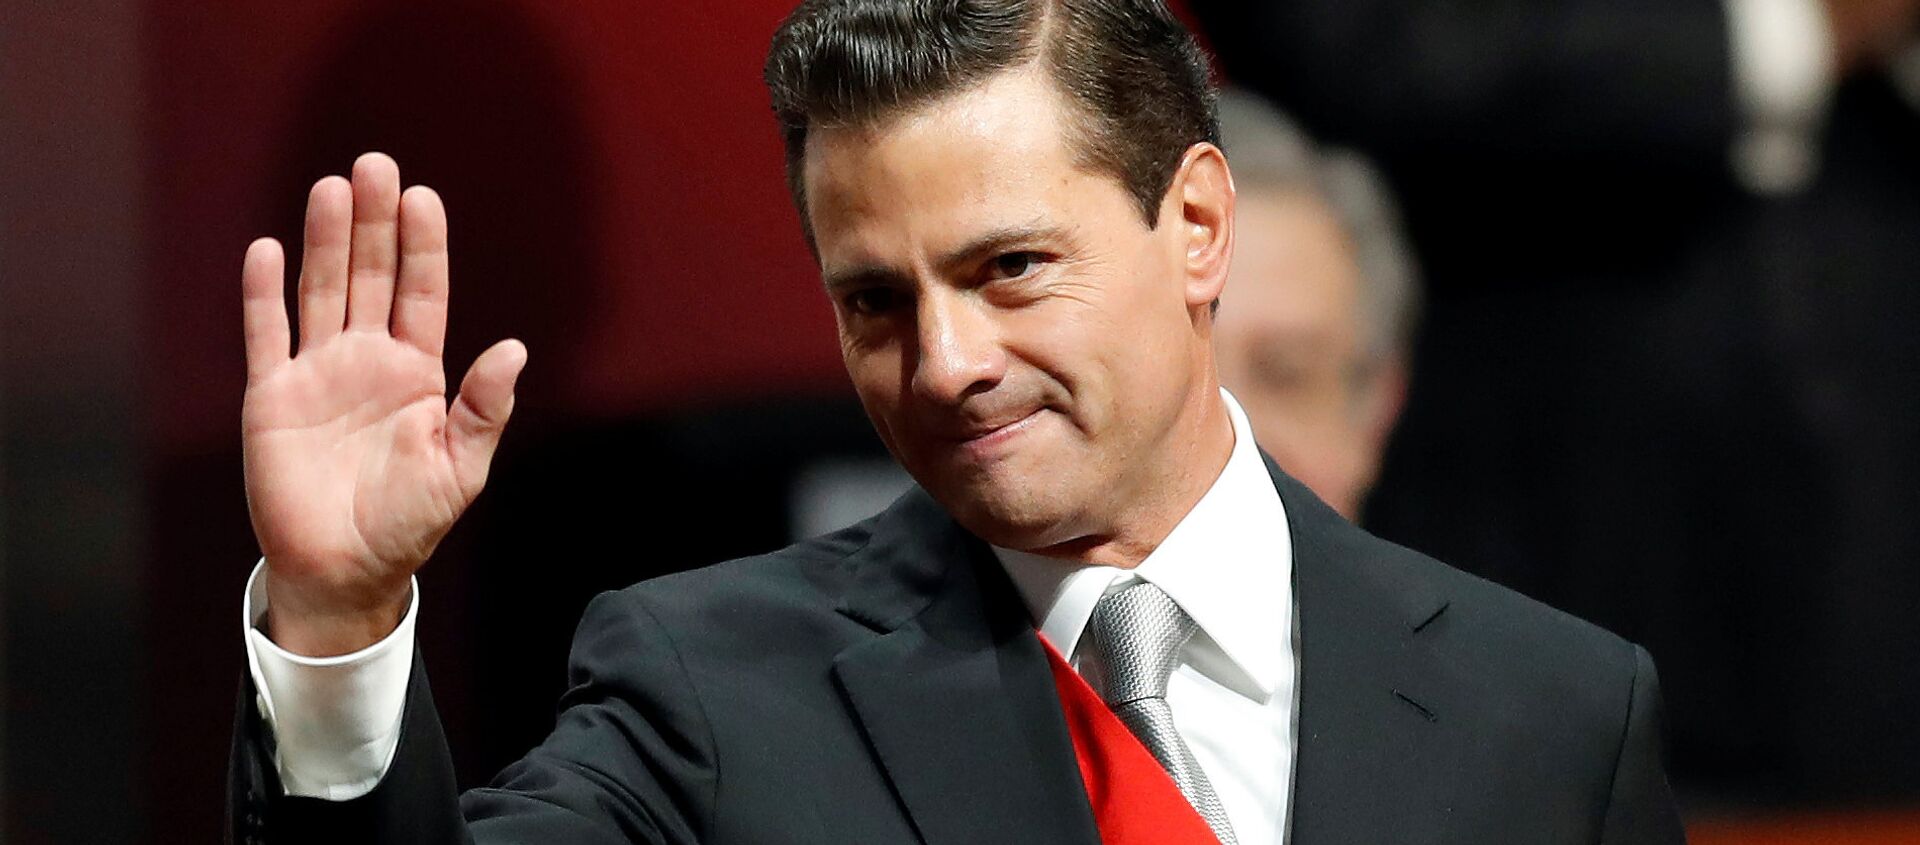 Enrique Peña Nieto, presidente saliente de México - Sputnik Mundo, 1920, 03.10.2018